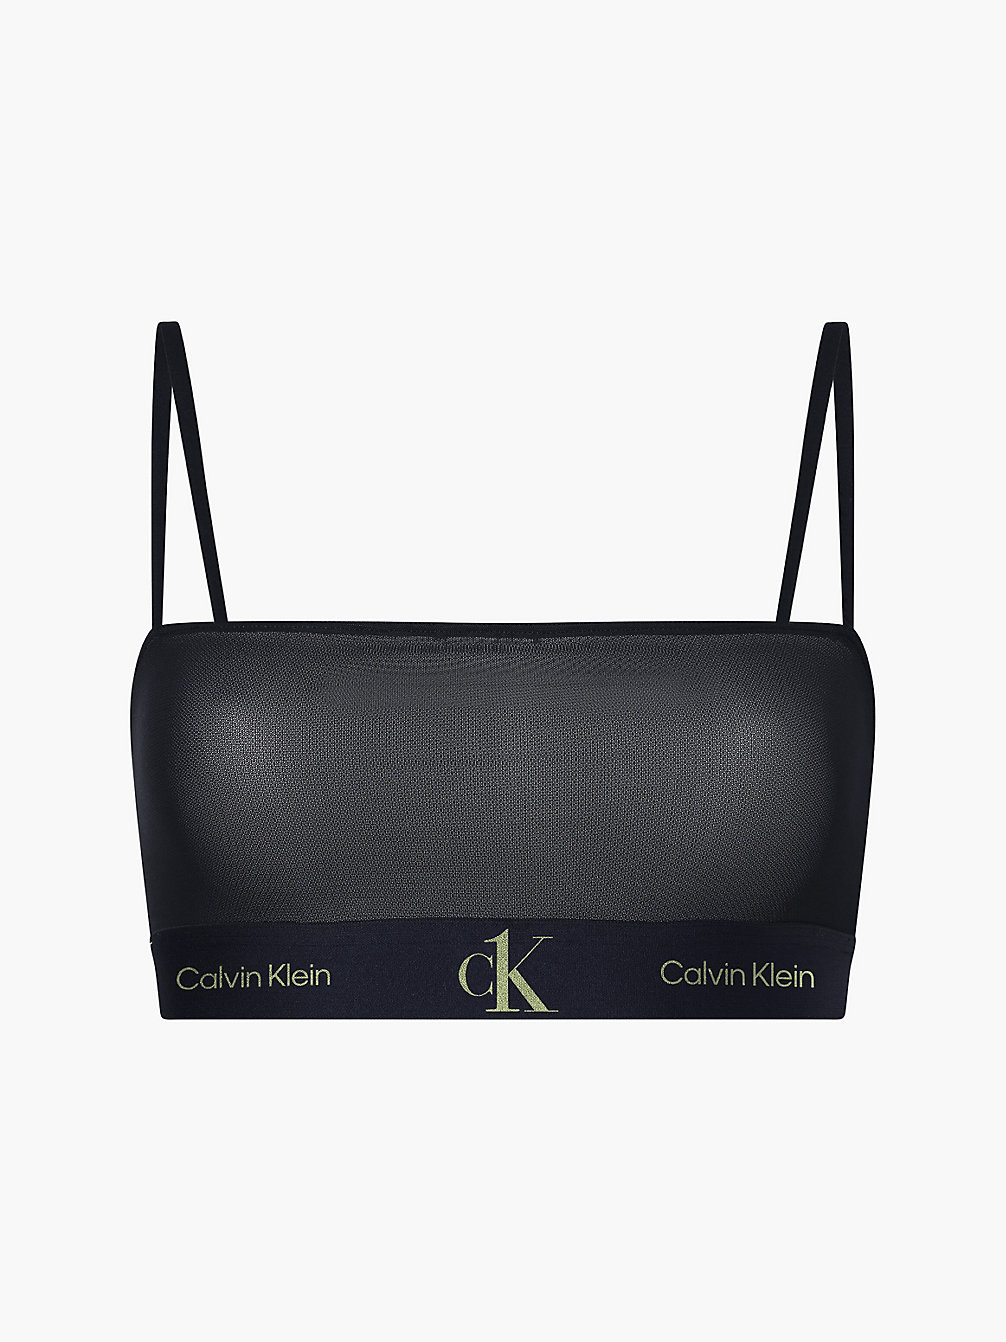 BLACK Bandeau Bralette - CK One undefined women Calvin Klein